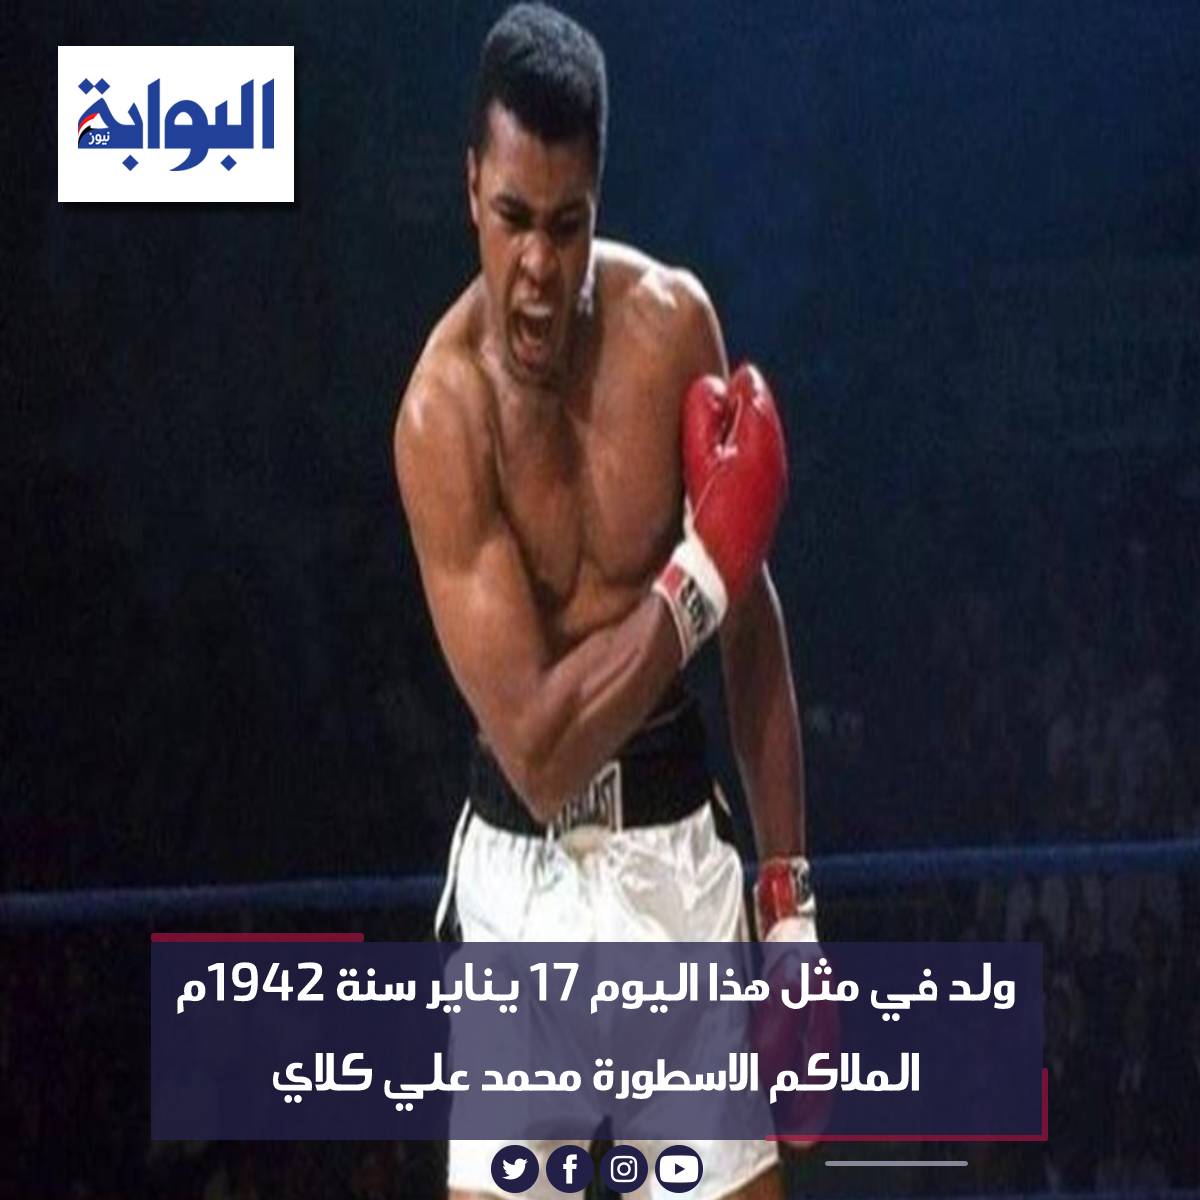 ولد في مثل هذا اليوم 17 يناير سنة 1942م الملاكم الاسطورة محمد علي كلاي